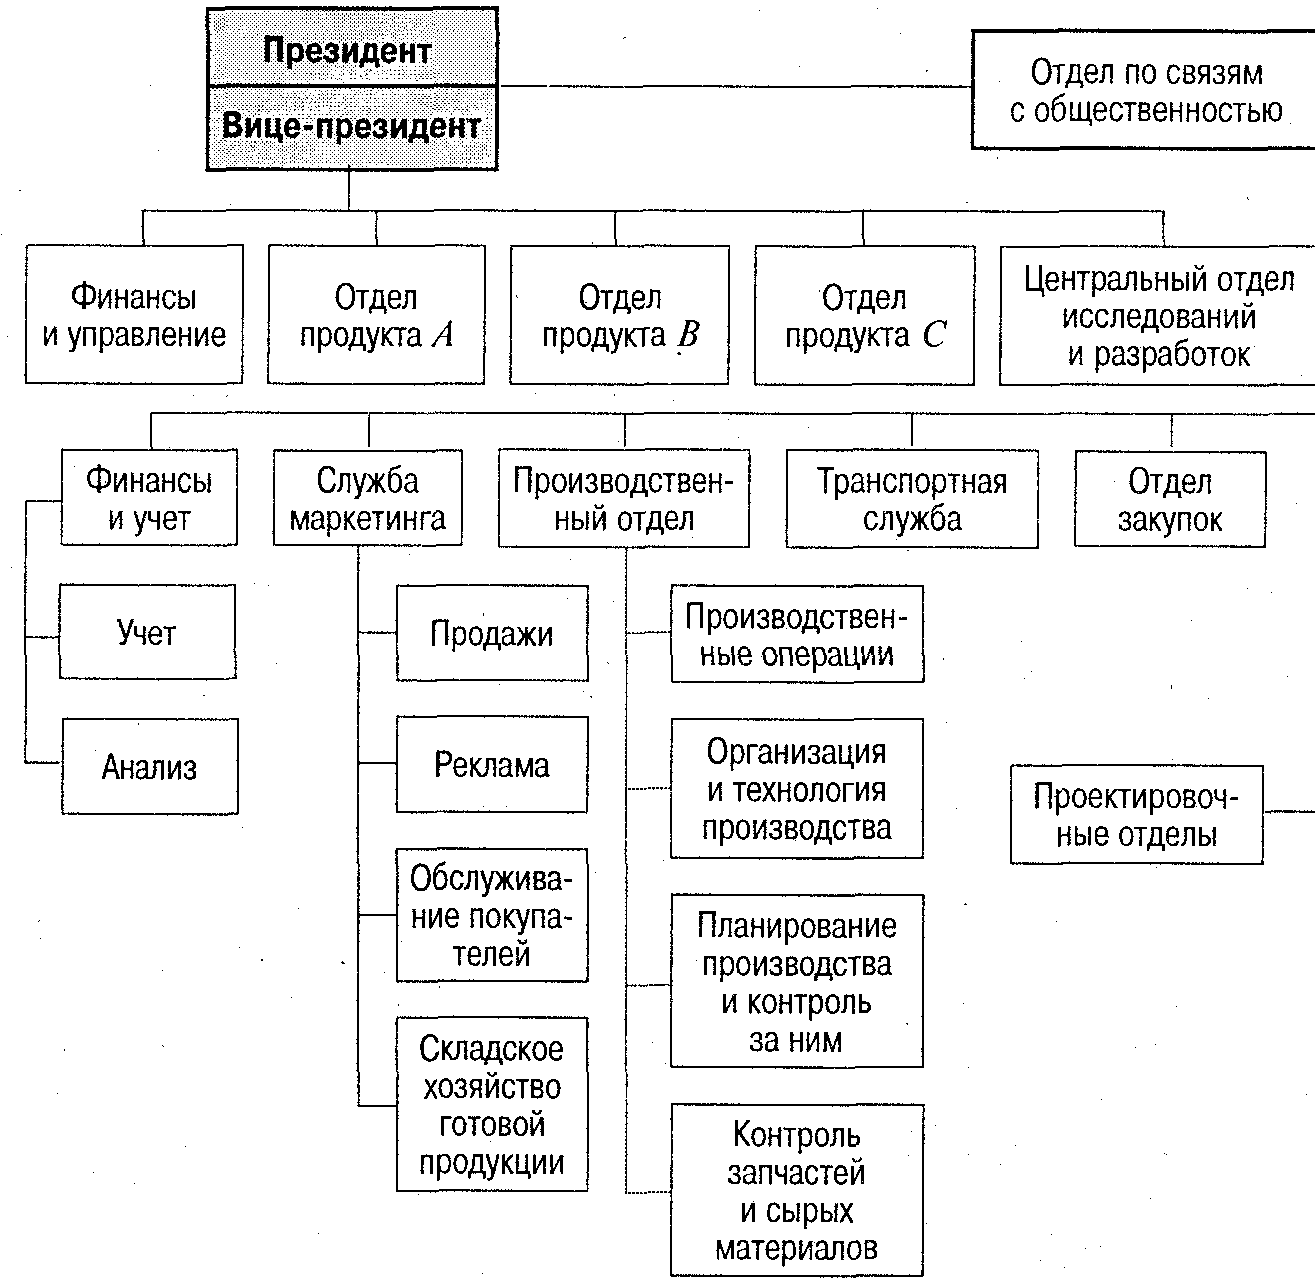 Организационная структура пр отдела